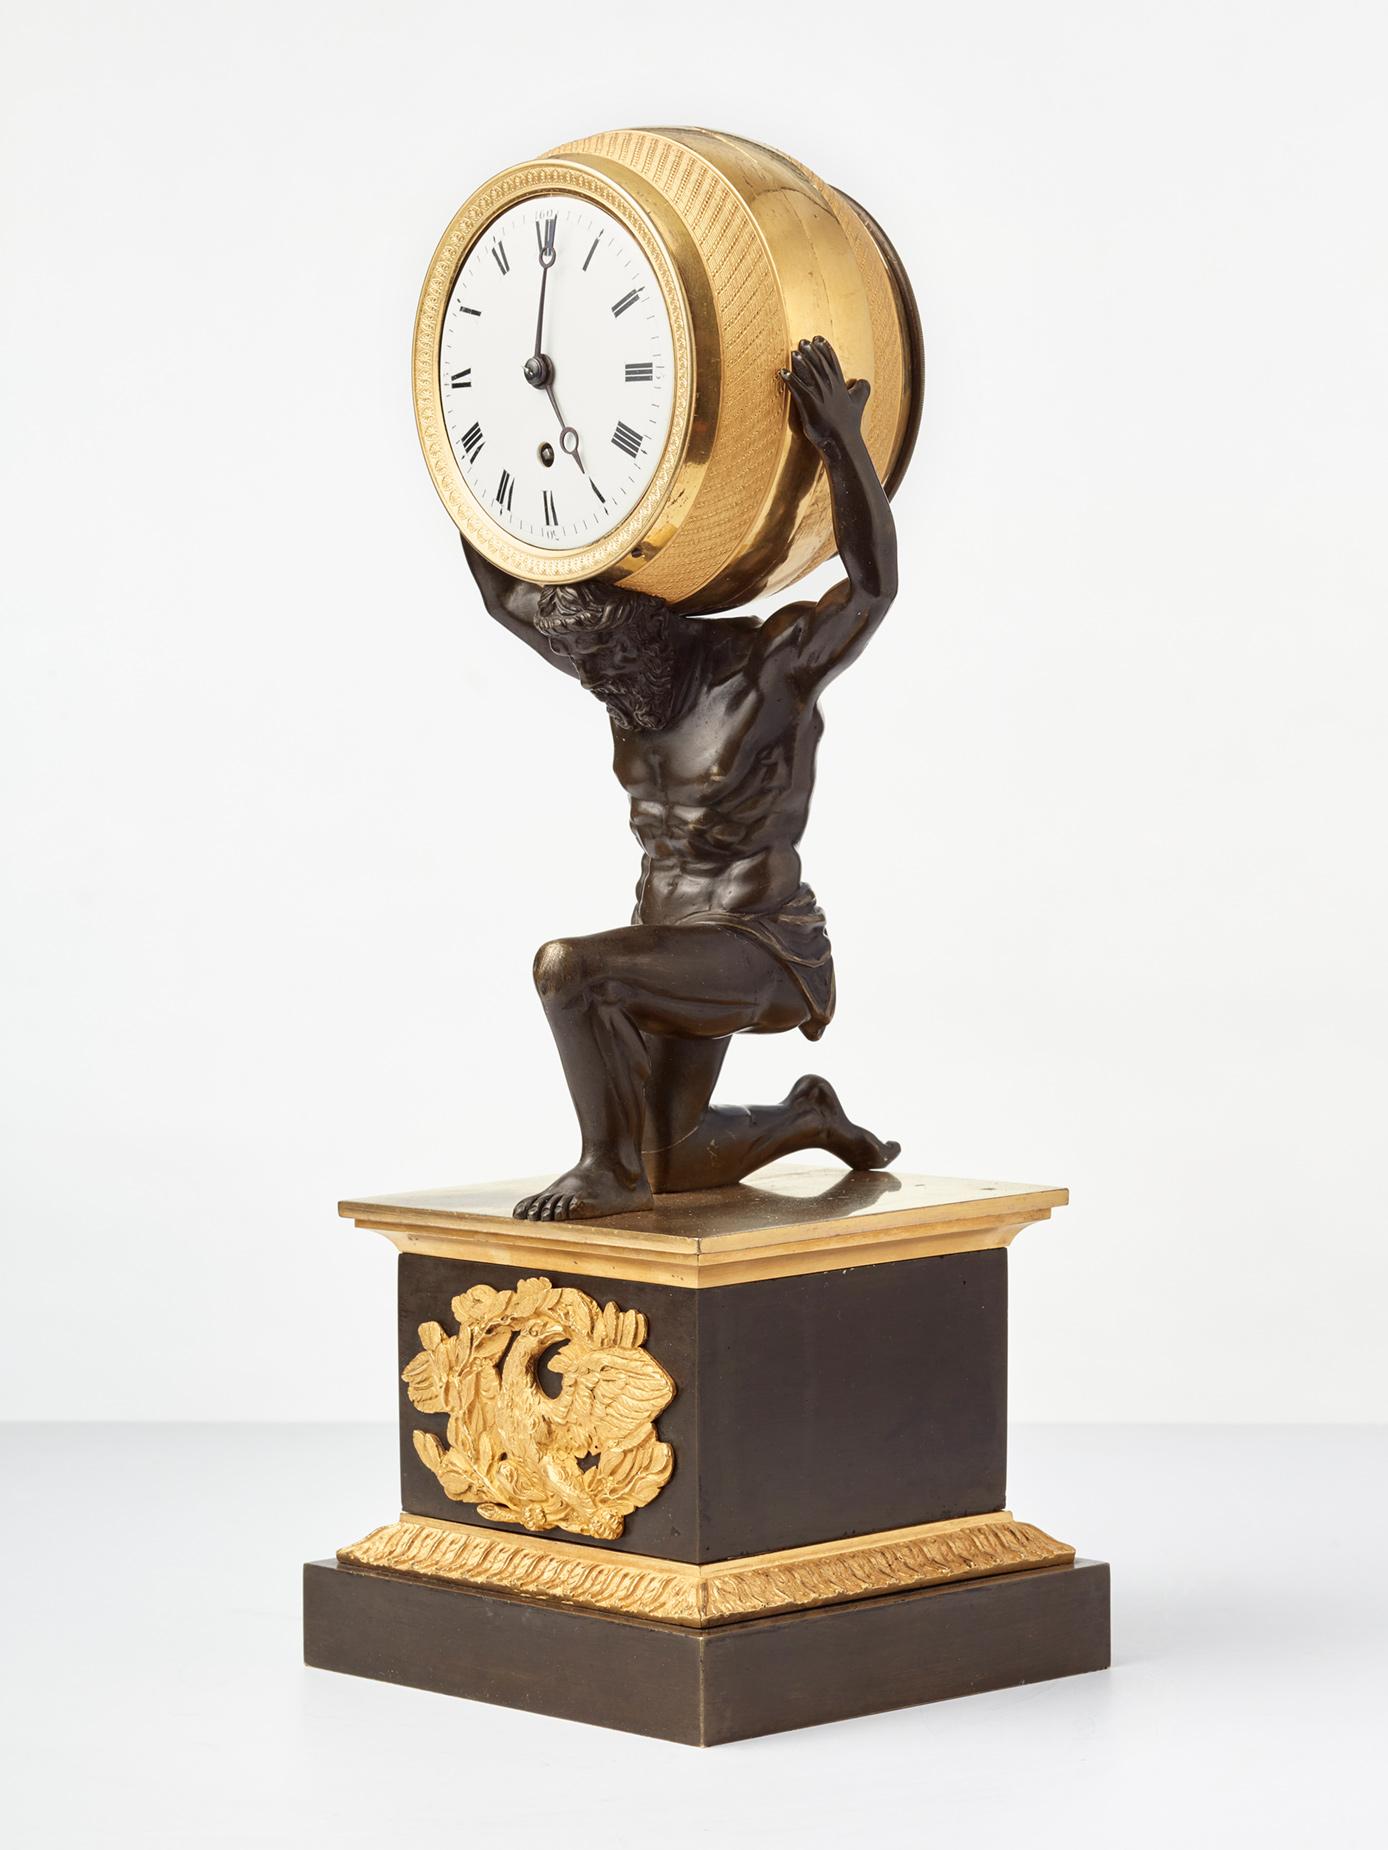 Die Firma F. Baetens aus London war ein sehr bekannter Hersteller von qualitativ hochwertigen, anspruchsvollen Uhrengehäusen mit unglaublichen Details. Ihre Uhren wurden an hochrangige Adels- oder Königsfamilien verkauft. 

Die patinierte